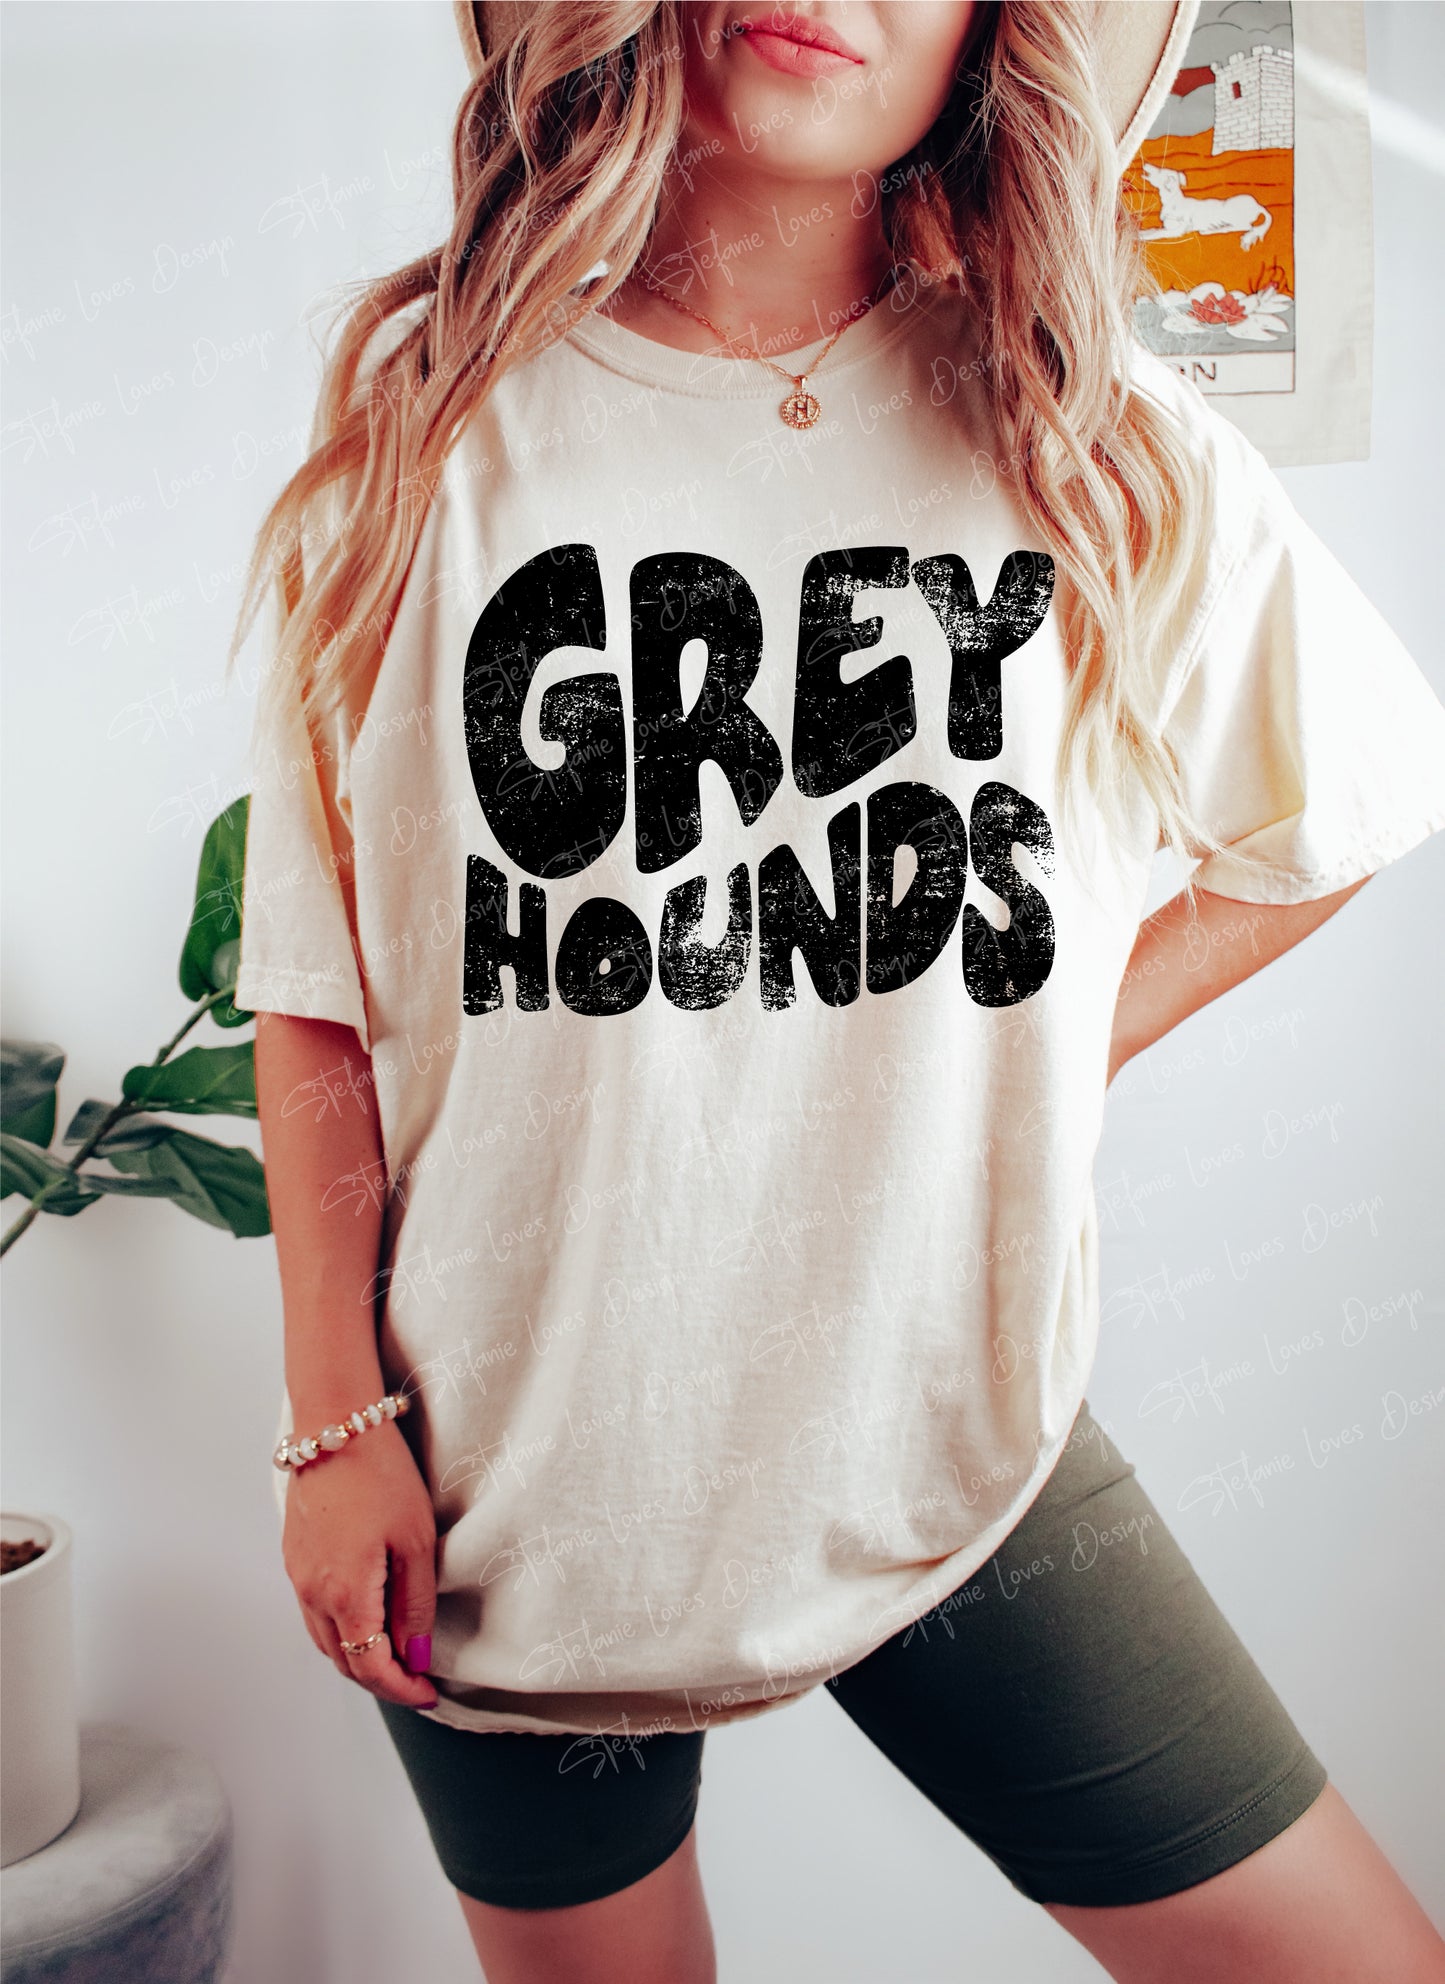 Greyhounds png, Distressed Greyhounds png, Greyhounds Shirt png, Digital Design